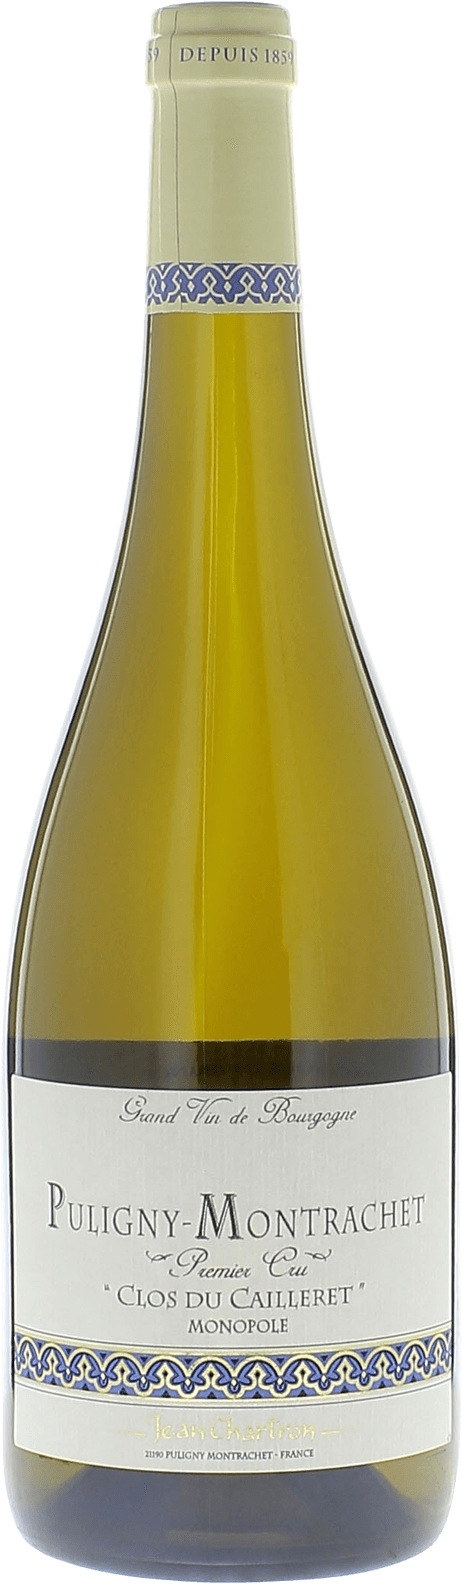 Puligny montrachet 1er cru clos du cailleret 2018 Domaine CHARTRON Jean, Bourgogne blanc